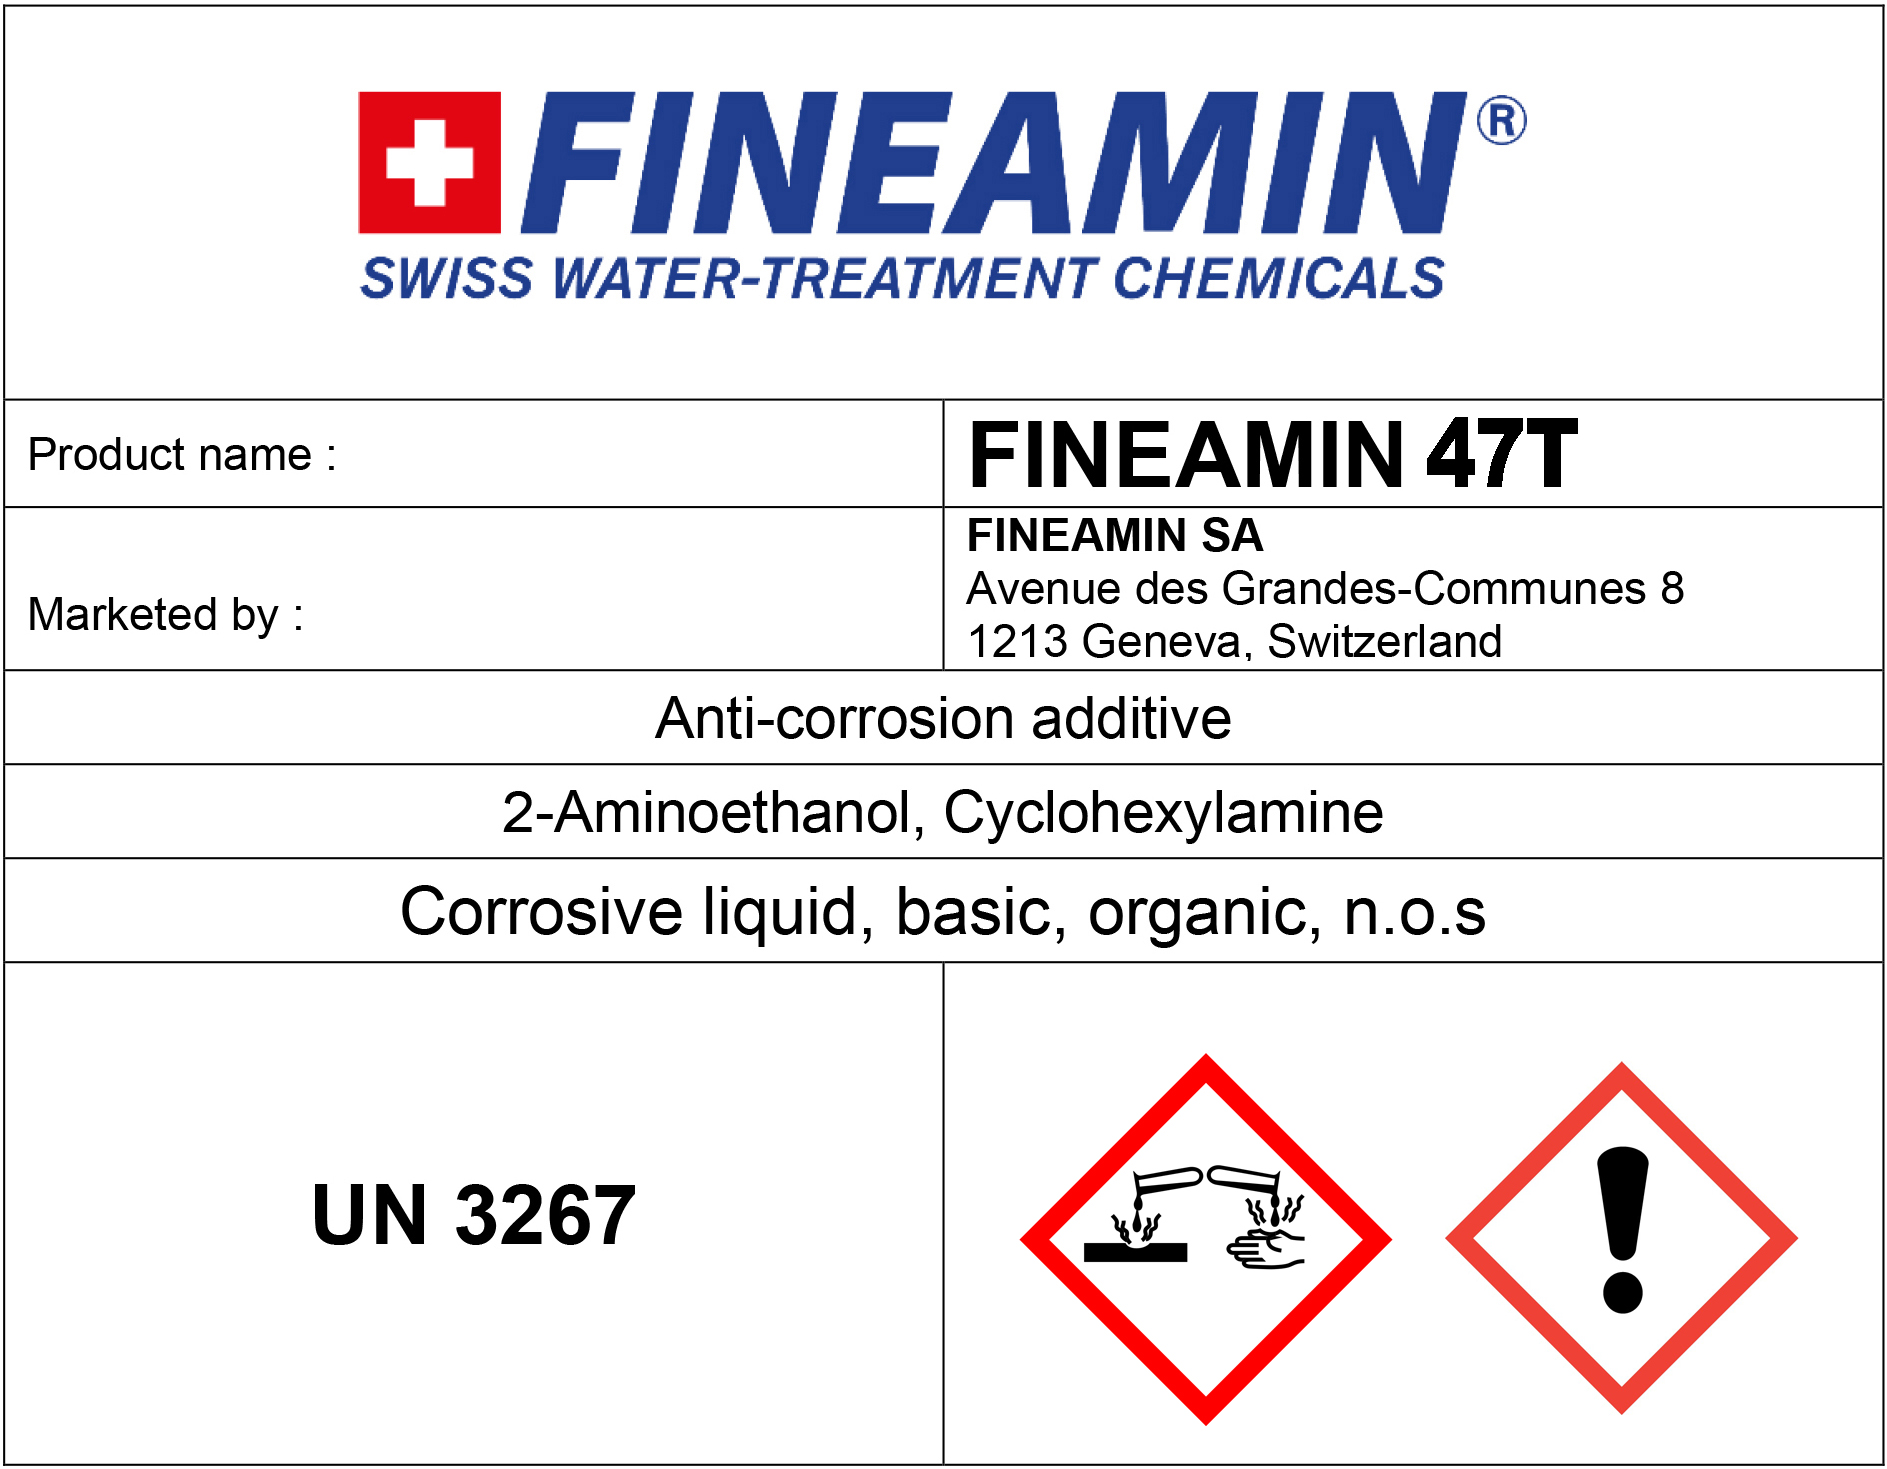 FINEAMIN 47T filming amines cyclohexylamine